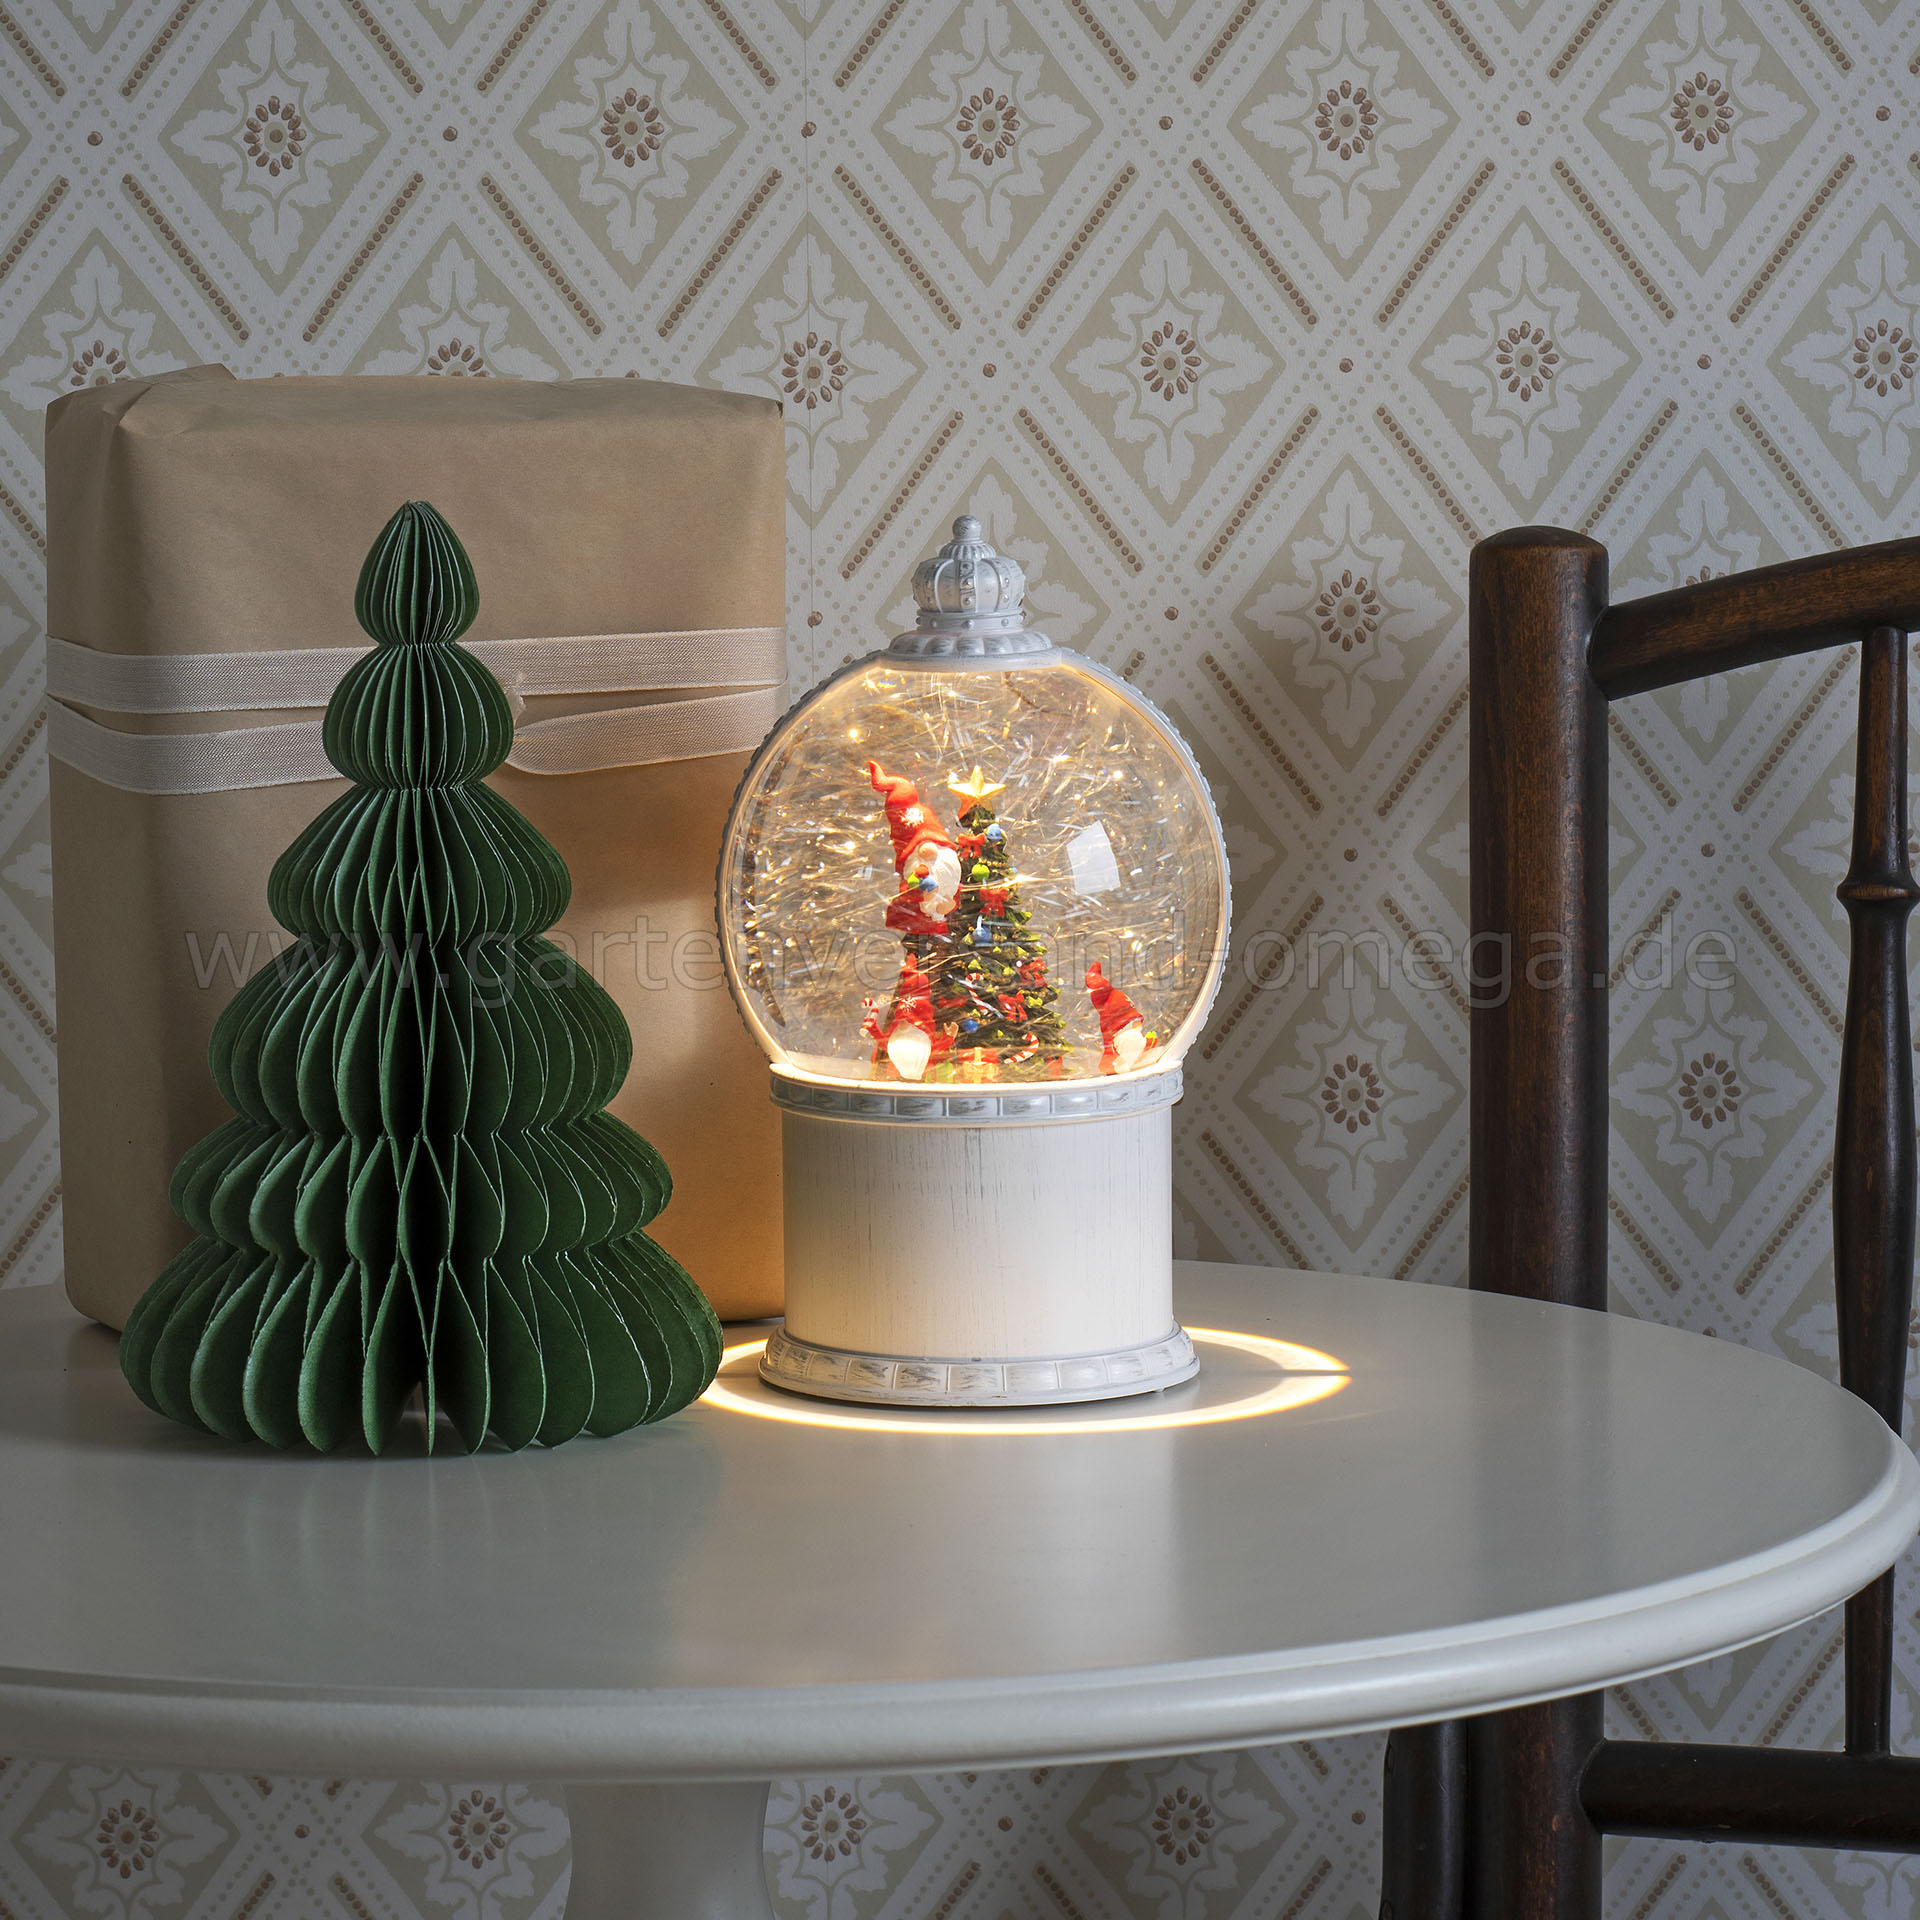 LED mit Schneekugel-Dekoration Christbaum Santas, Schneekugel-Laterne, LED-Kugellaterne wassergefüllte Weihnachtswichtel, wie Weihnachtsbeleuchtung Kugellaterne Schneekugel, Wichtel Weihnachtsbeleuchtung -